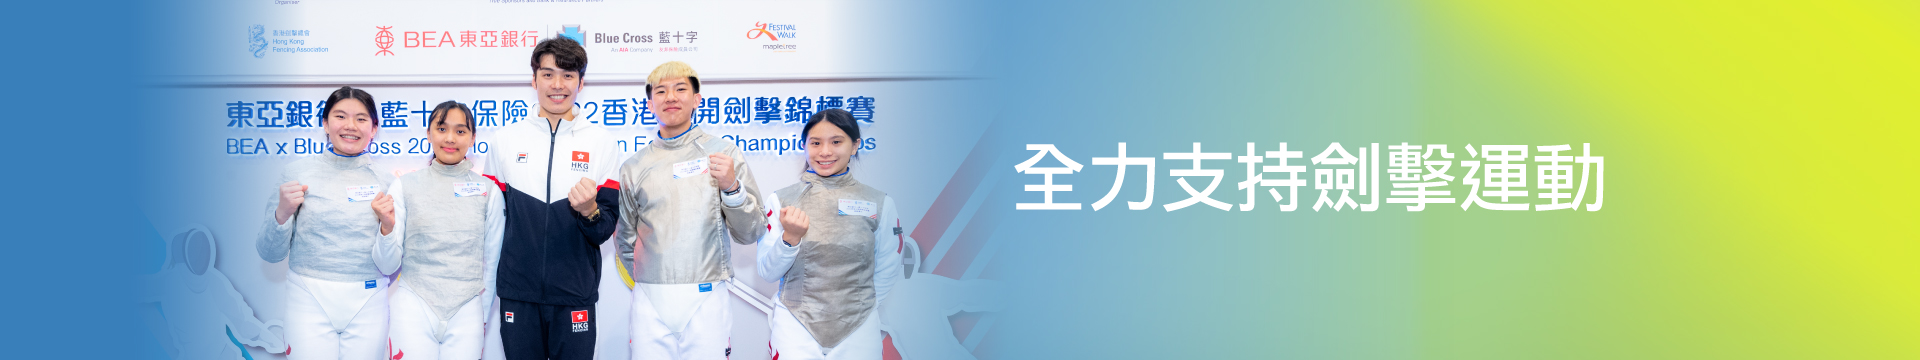 策劃我的「智勝關鍵」 我的世界 有藍十字「智」全面保障 #全力支持香港劍擊運動